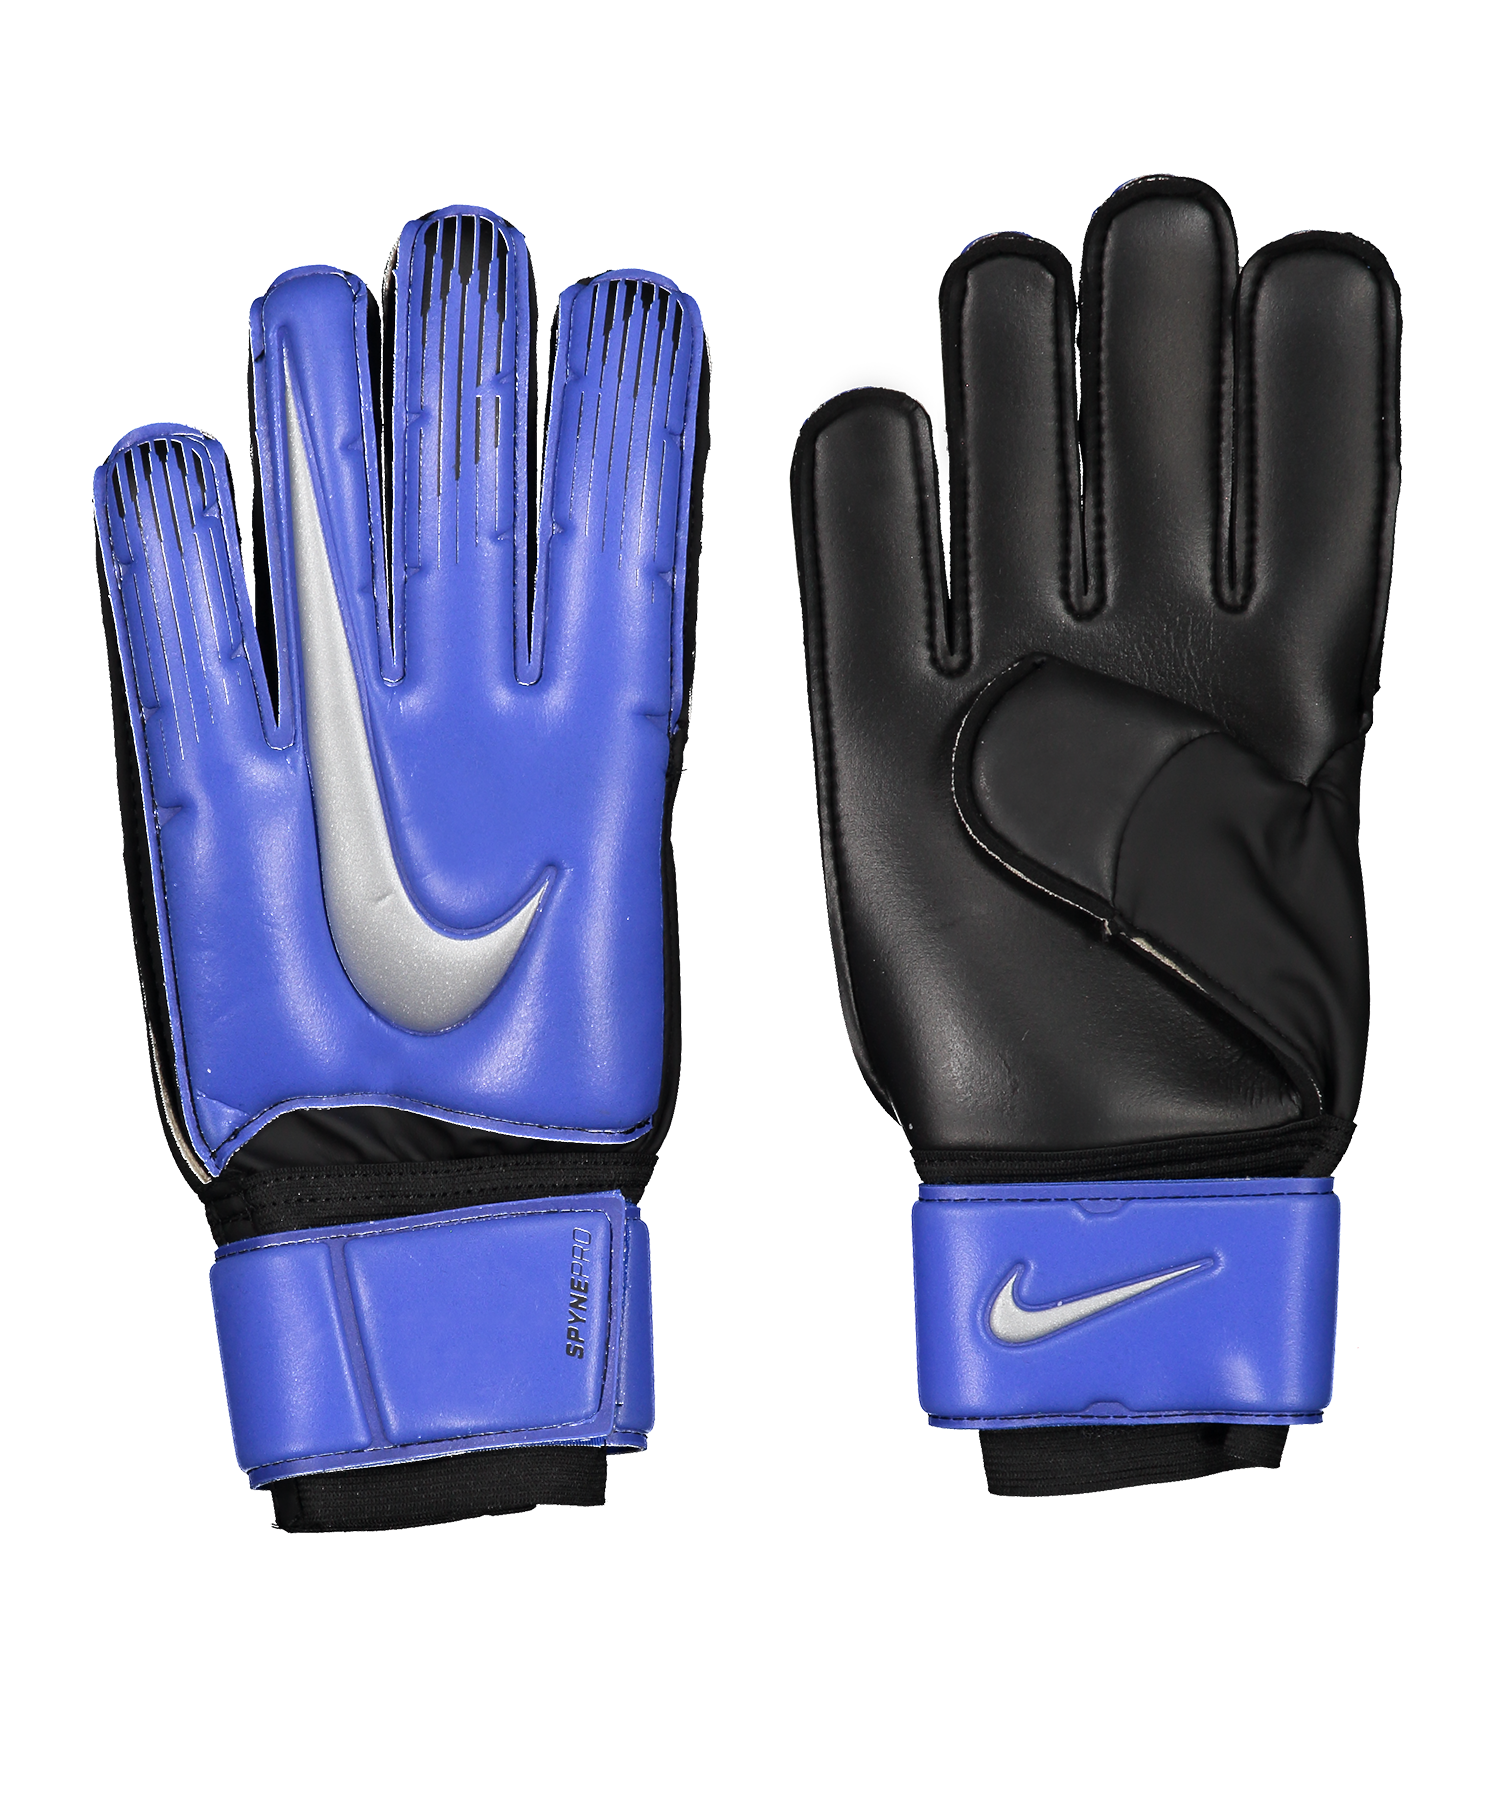 Nike Goalkeeper Spyne Pro Soccer Gloves